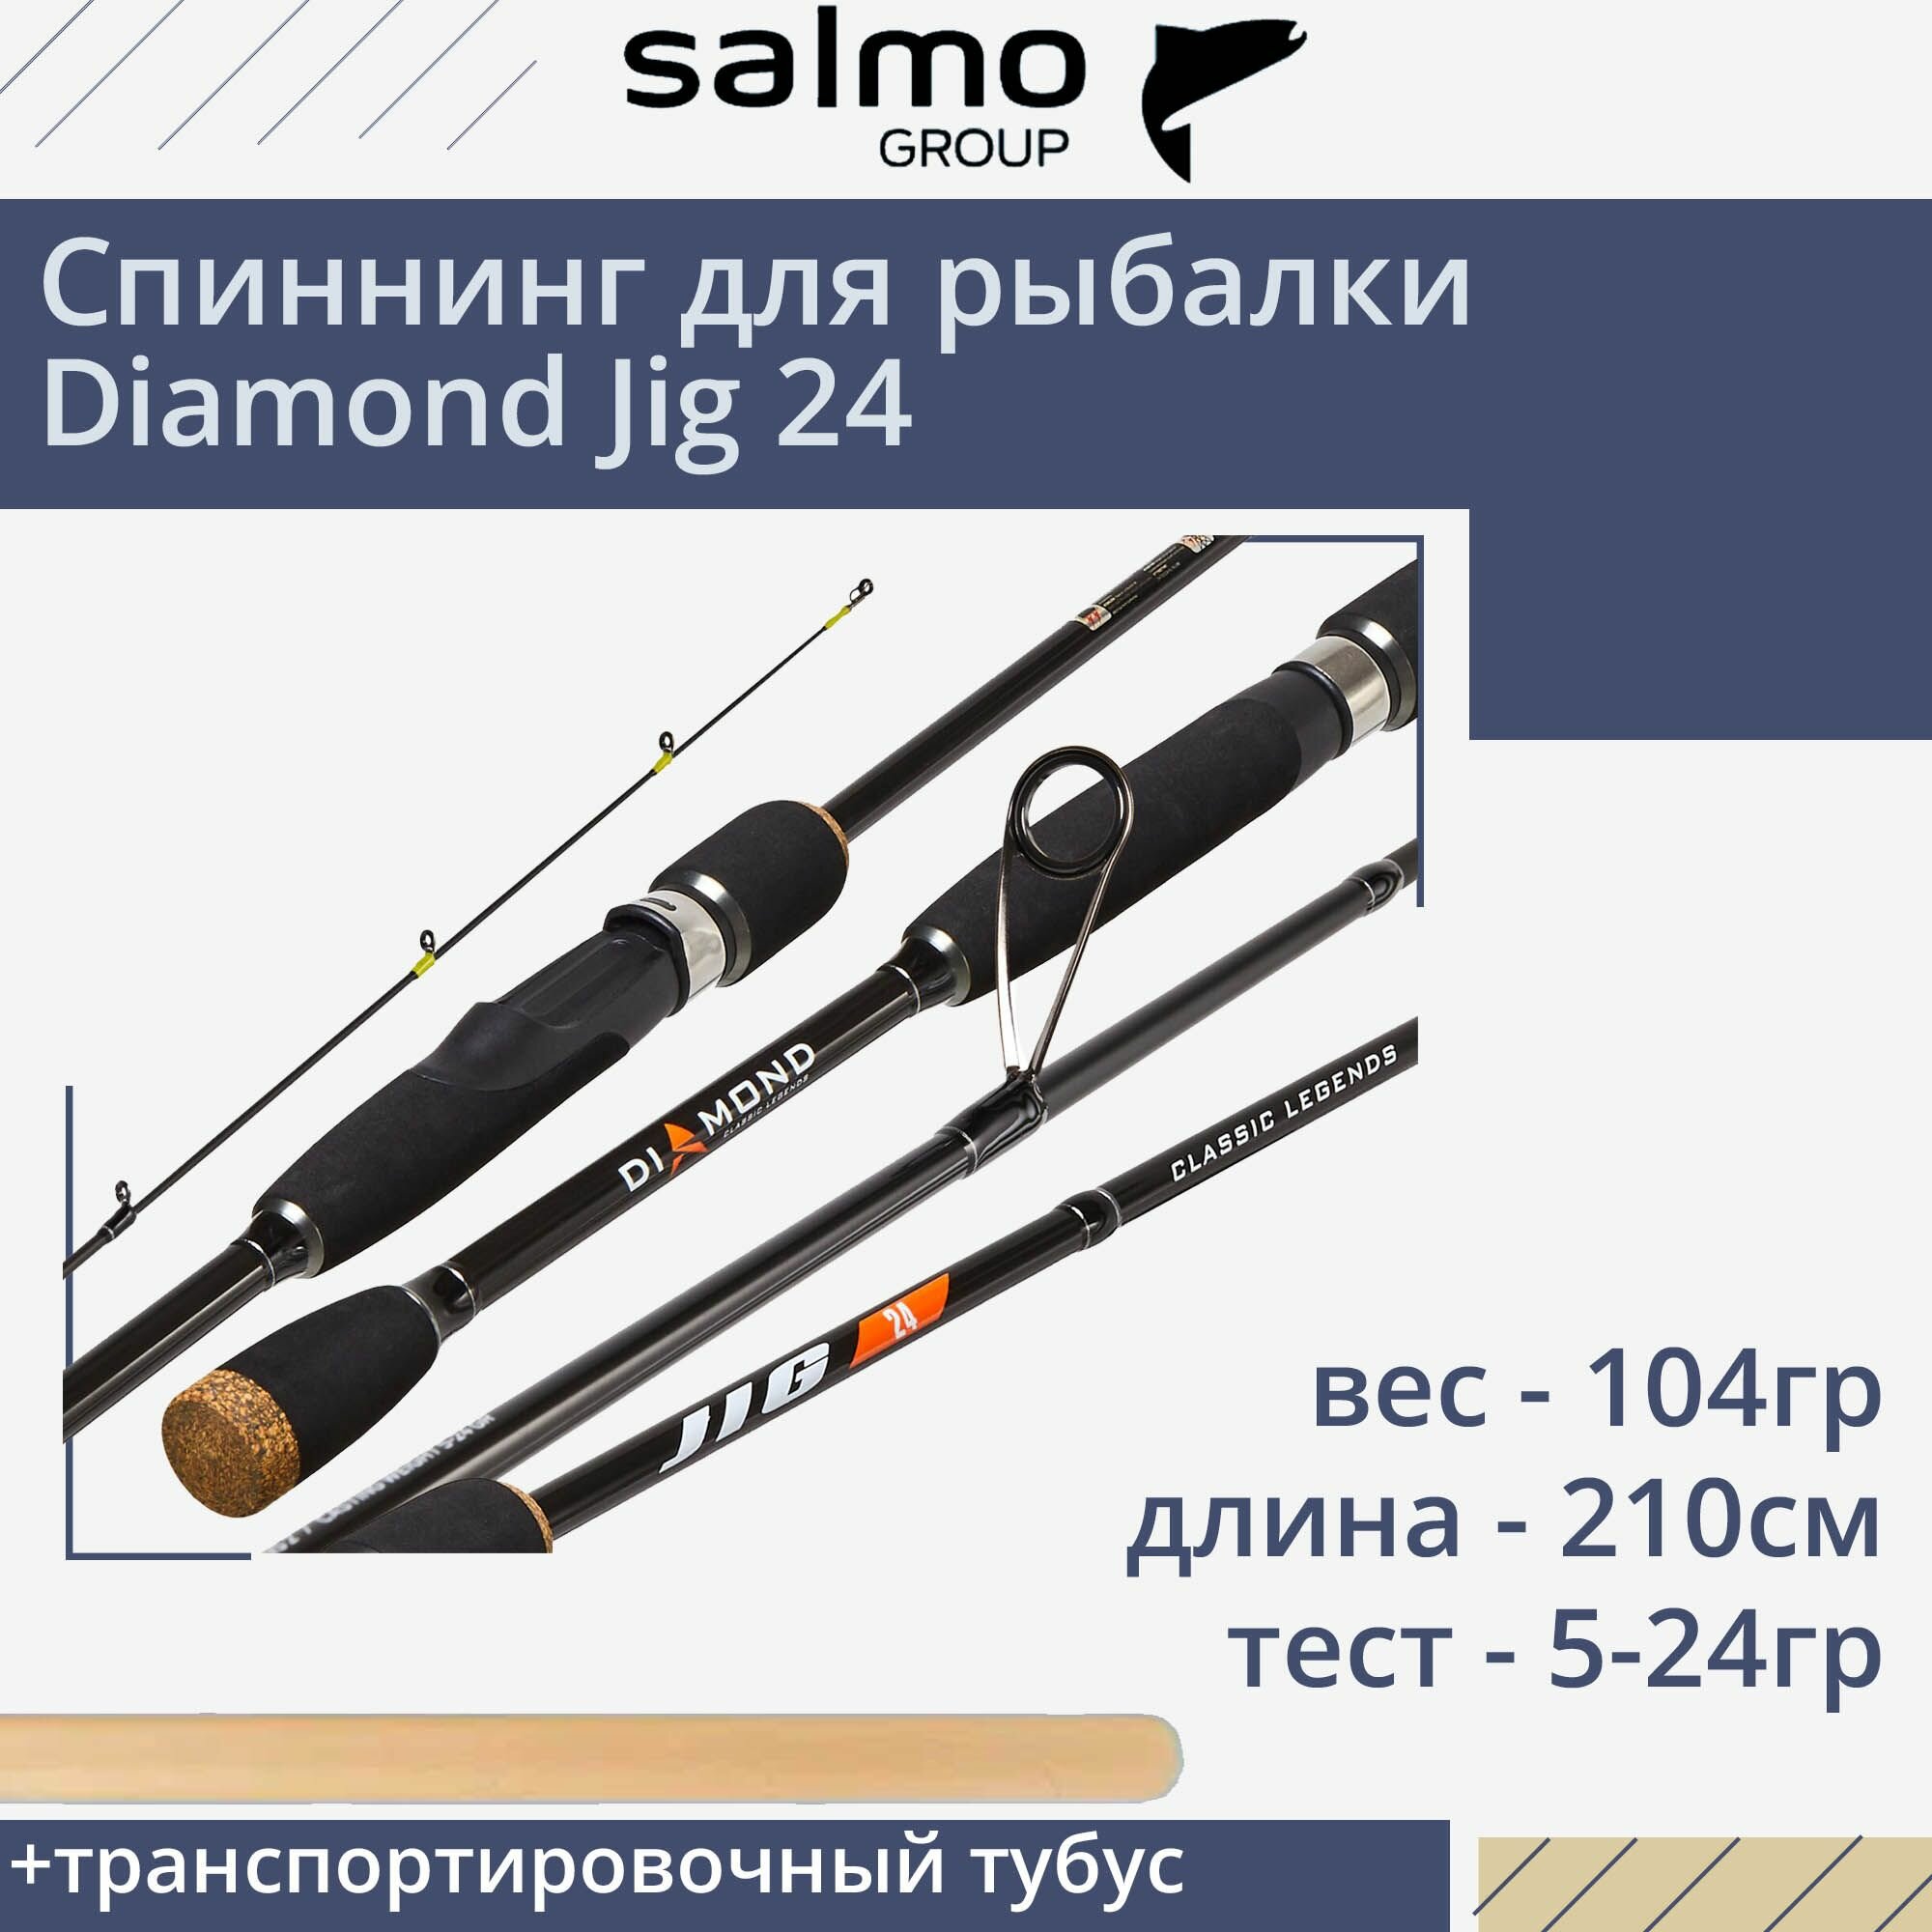 Спиннинг для рыбалки Salmo Diamond JIG 24 2.10, рабочая длина 210см, вес 104гр